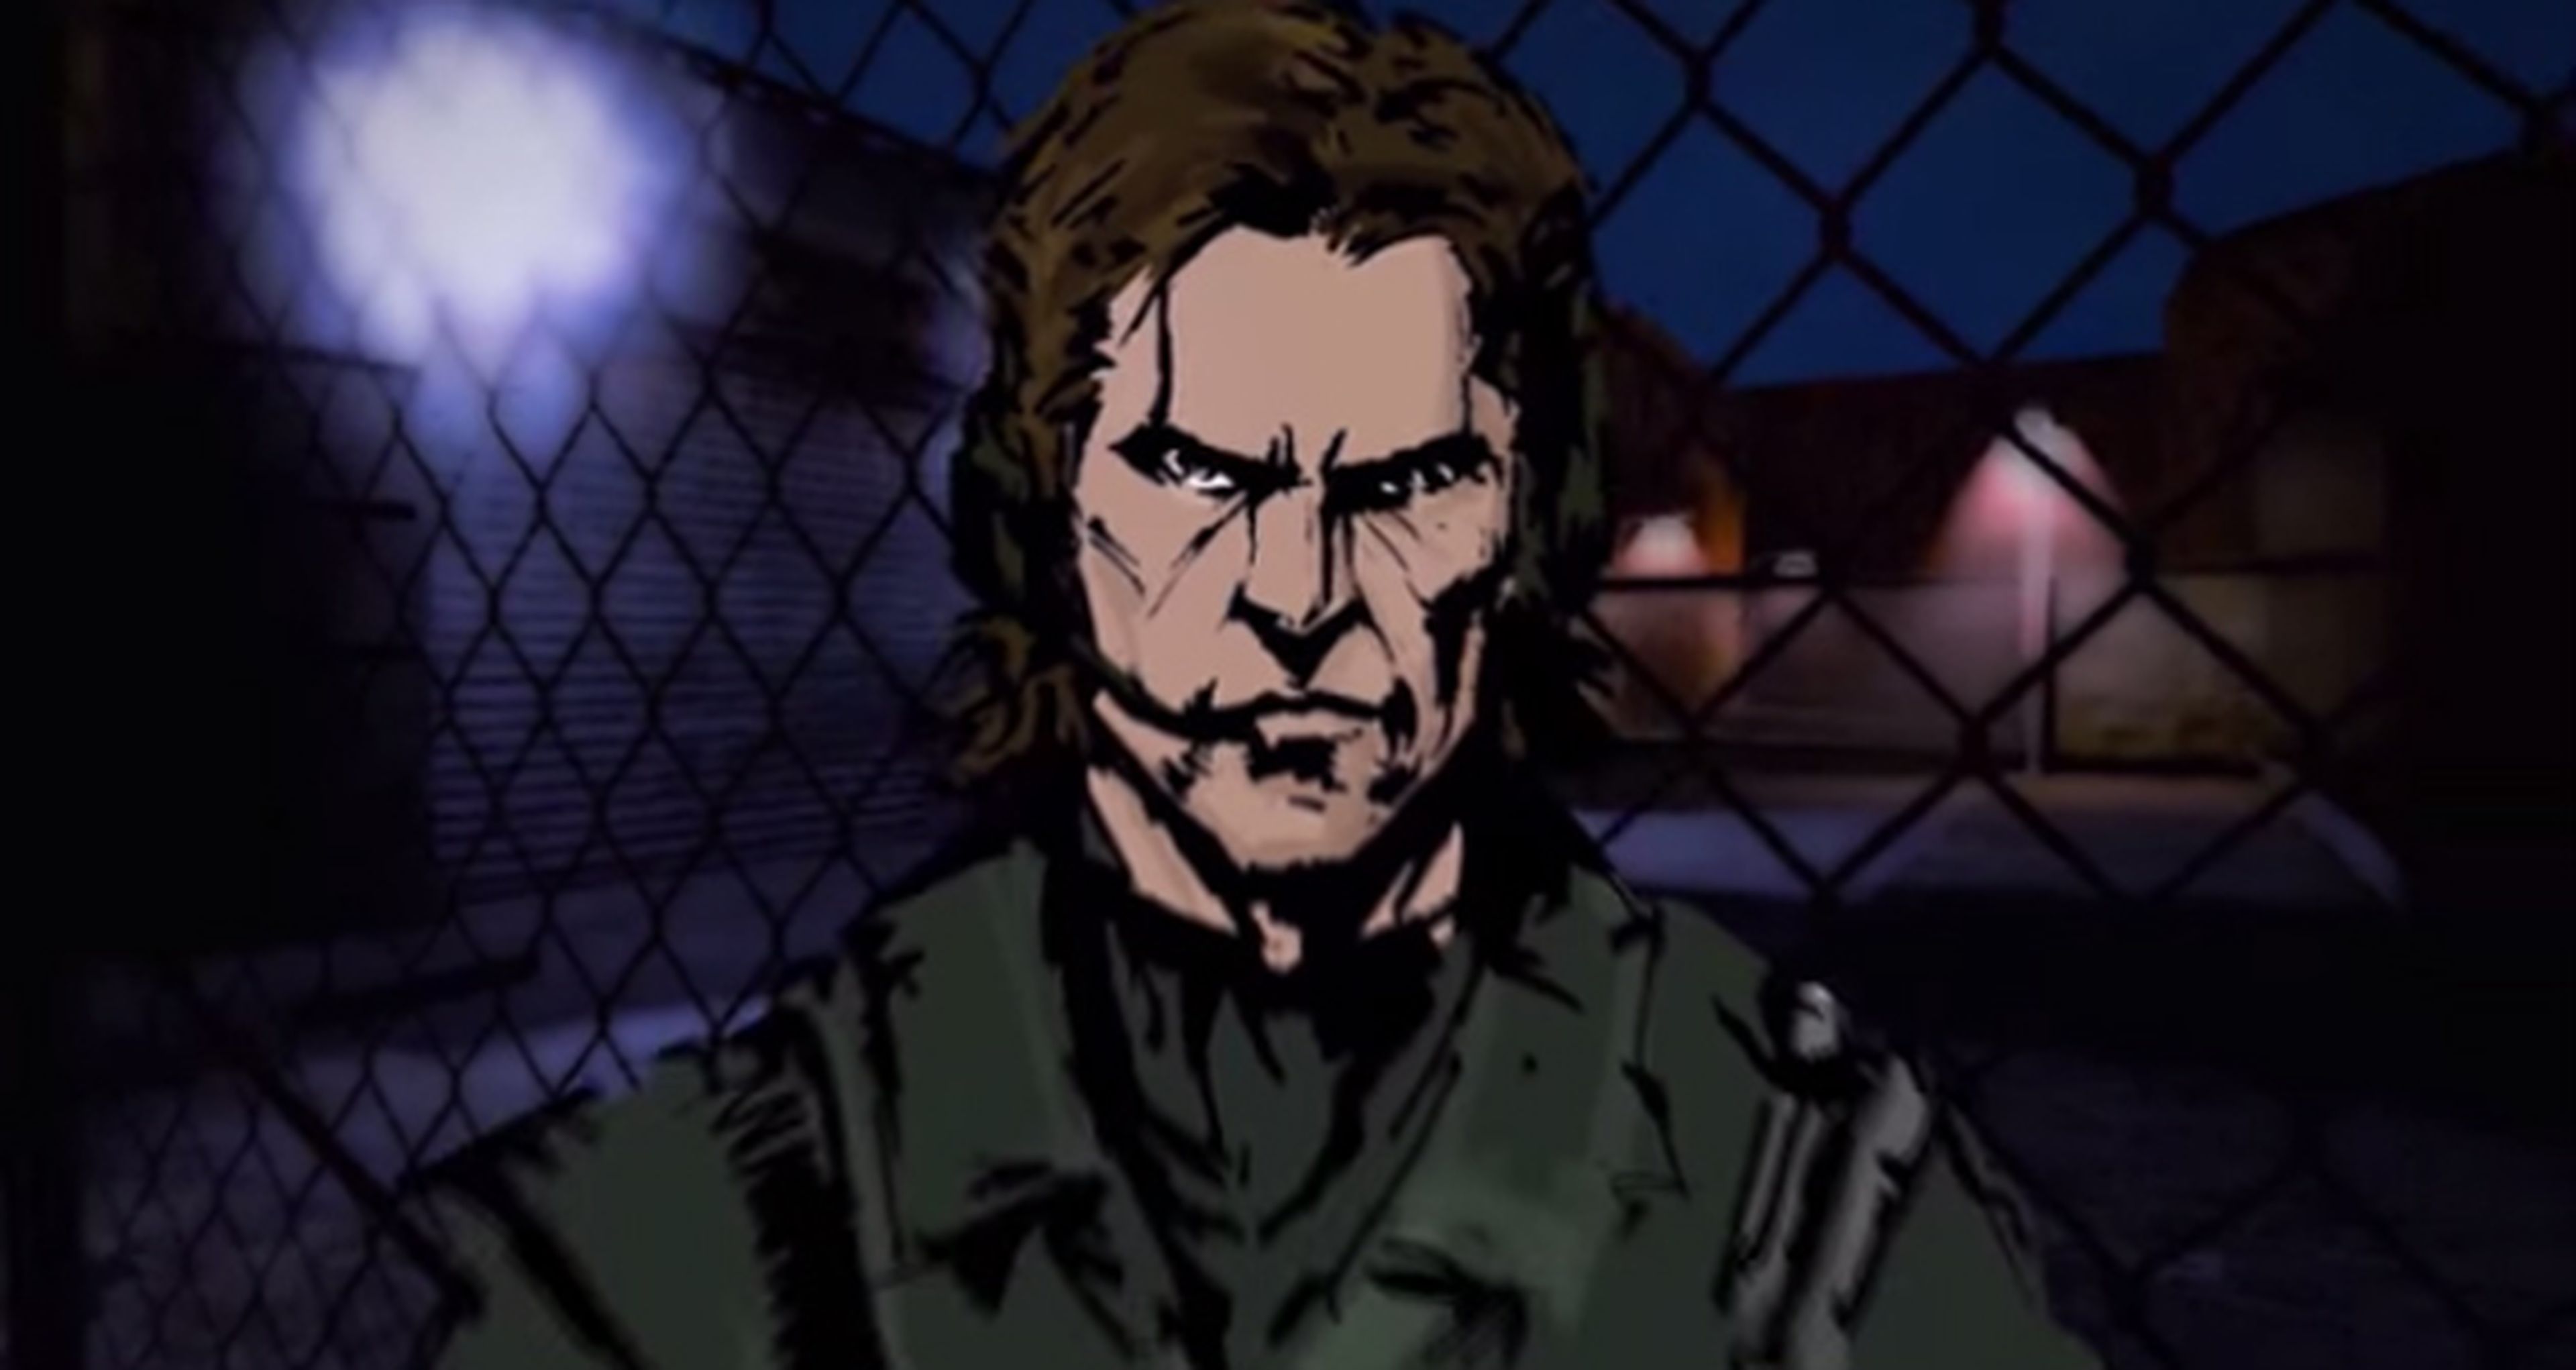 El remake de Metal Gear hecho por fans parado por orden de Konami